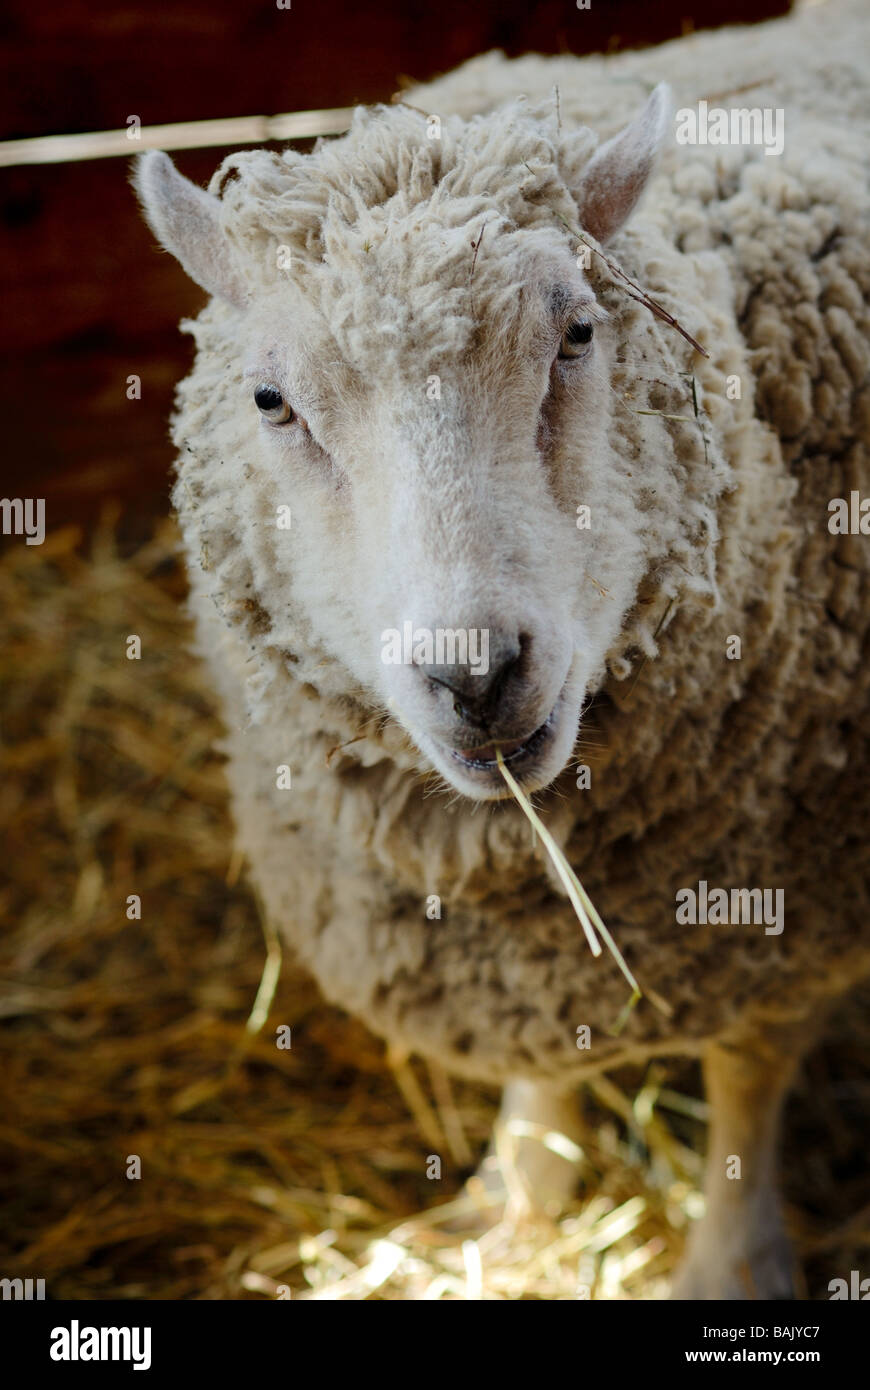 Un mouton a l'air comique avec un morceau de foin pendaison frmo sa bouche comme une cigarette. Banque D'Images